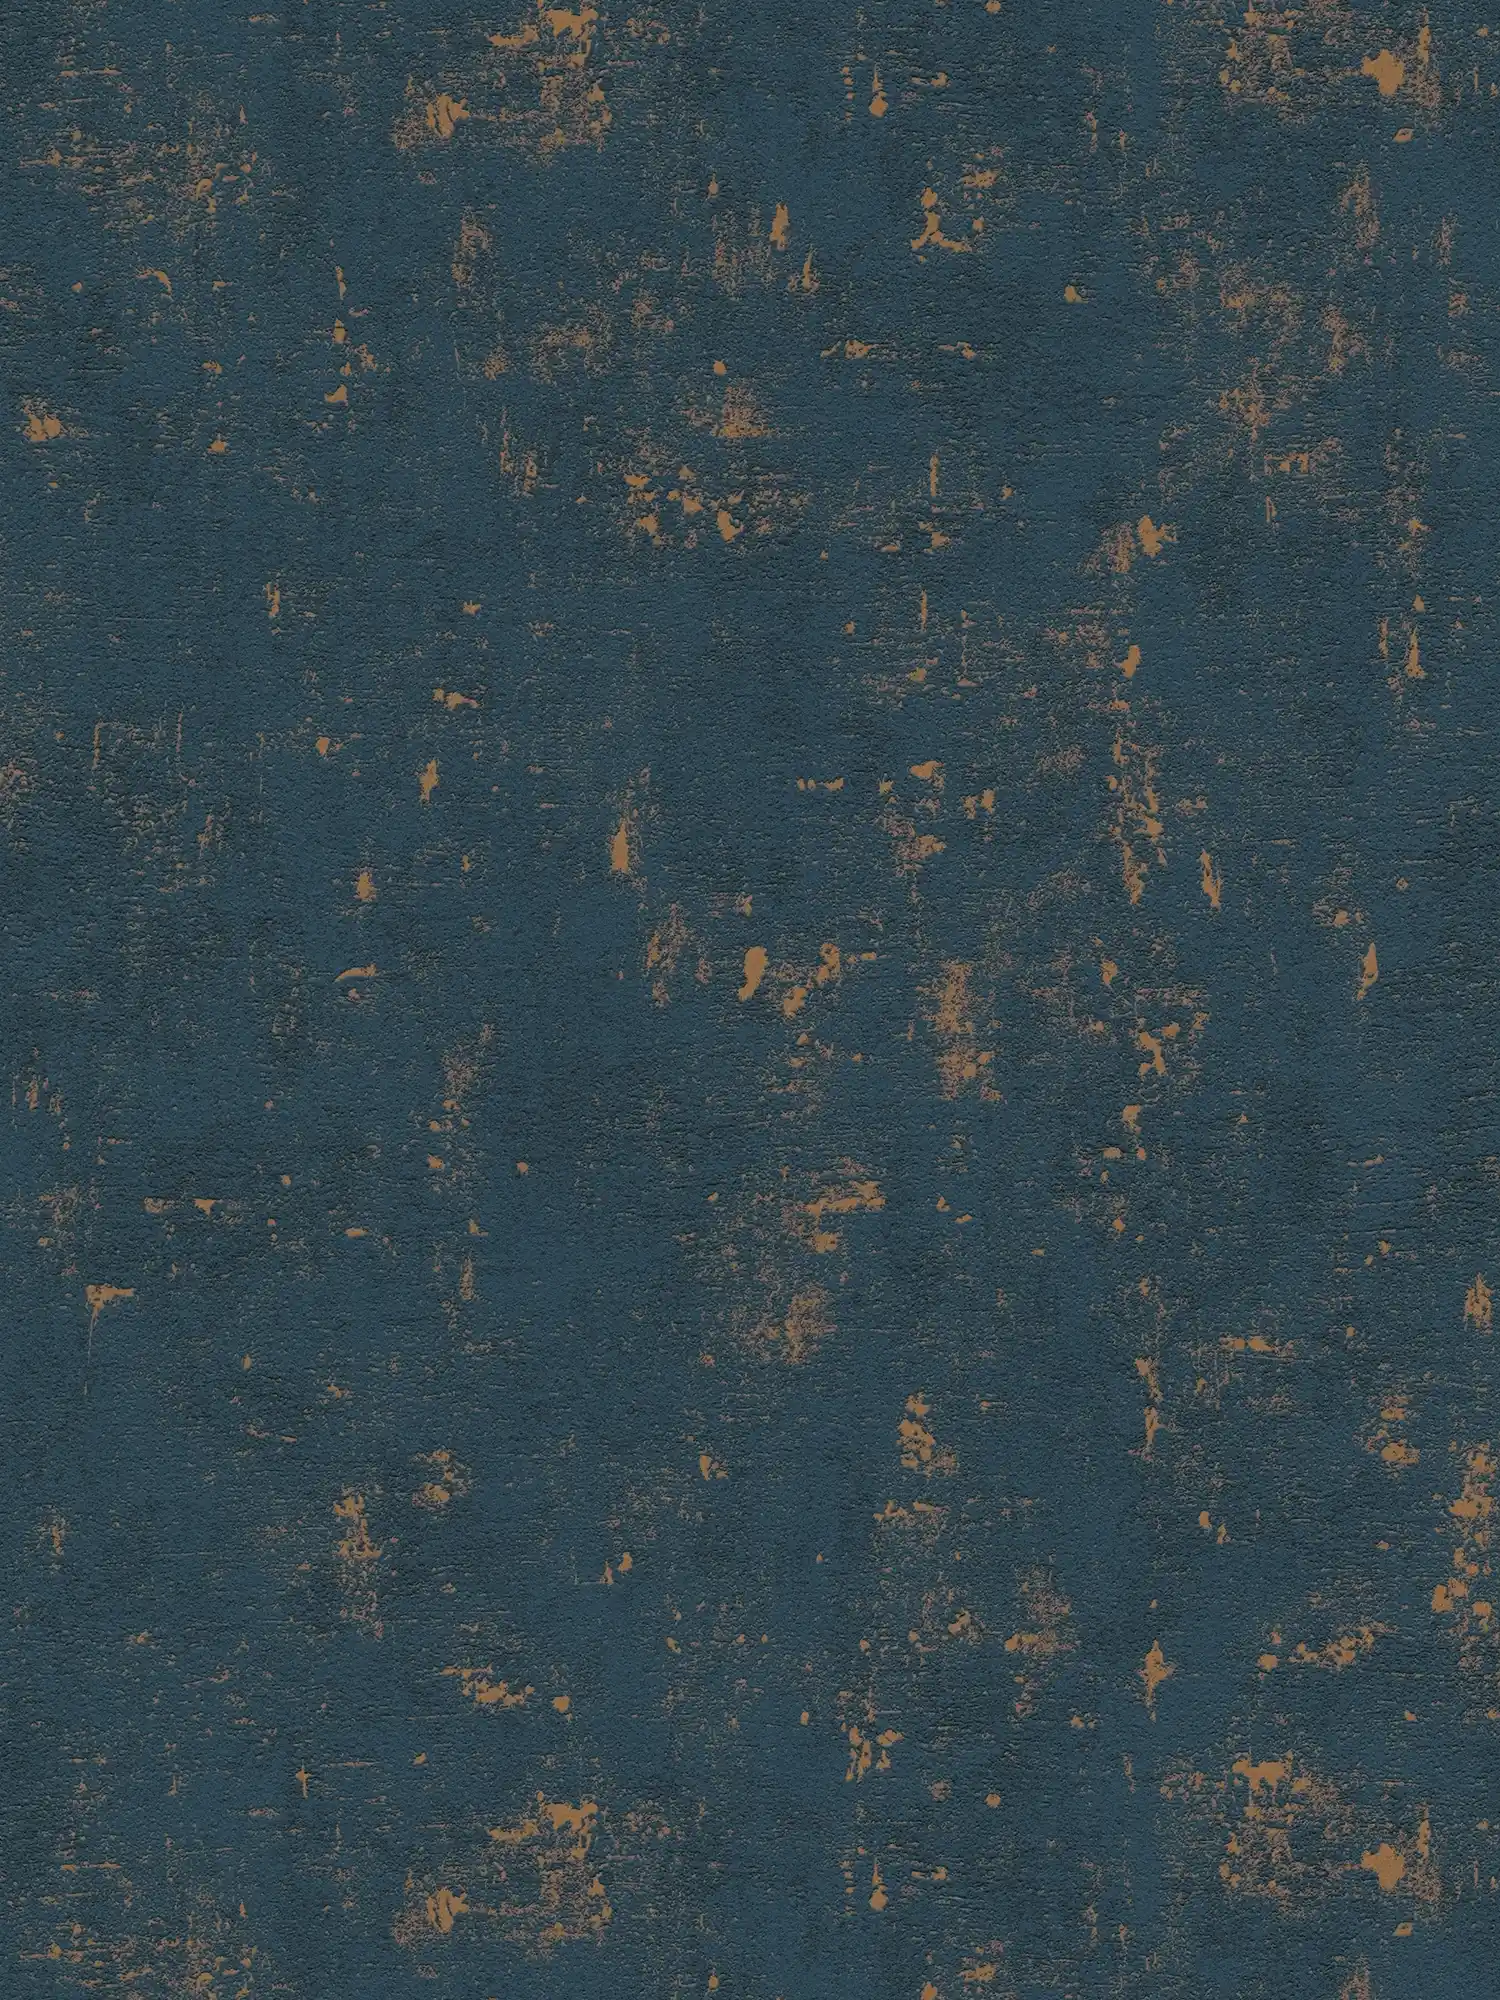 Papel pintado Bast con efectos metálicos - azul oscuro, dorado
